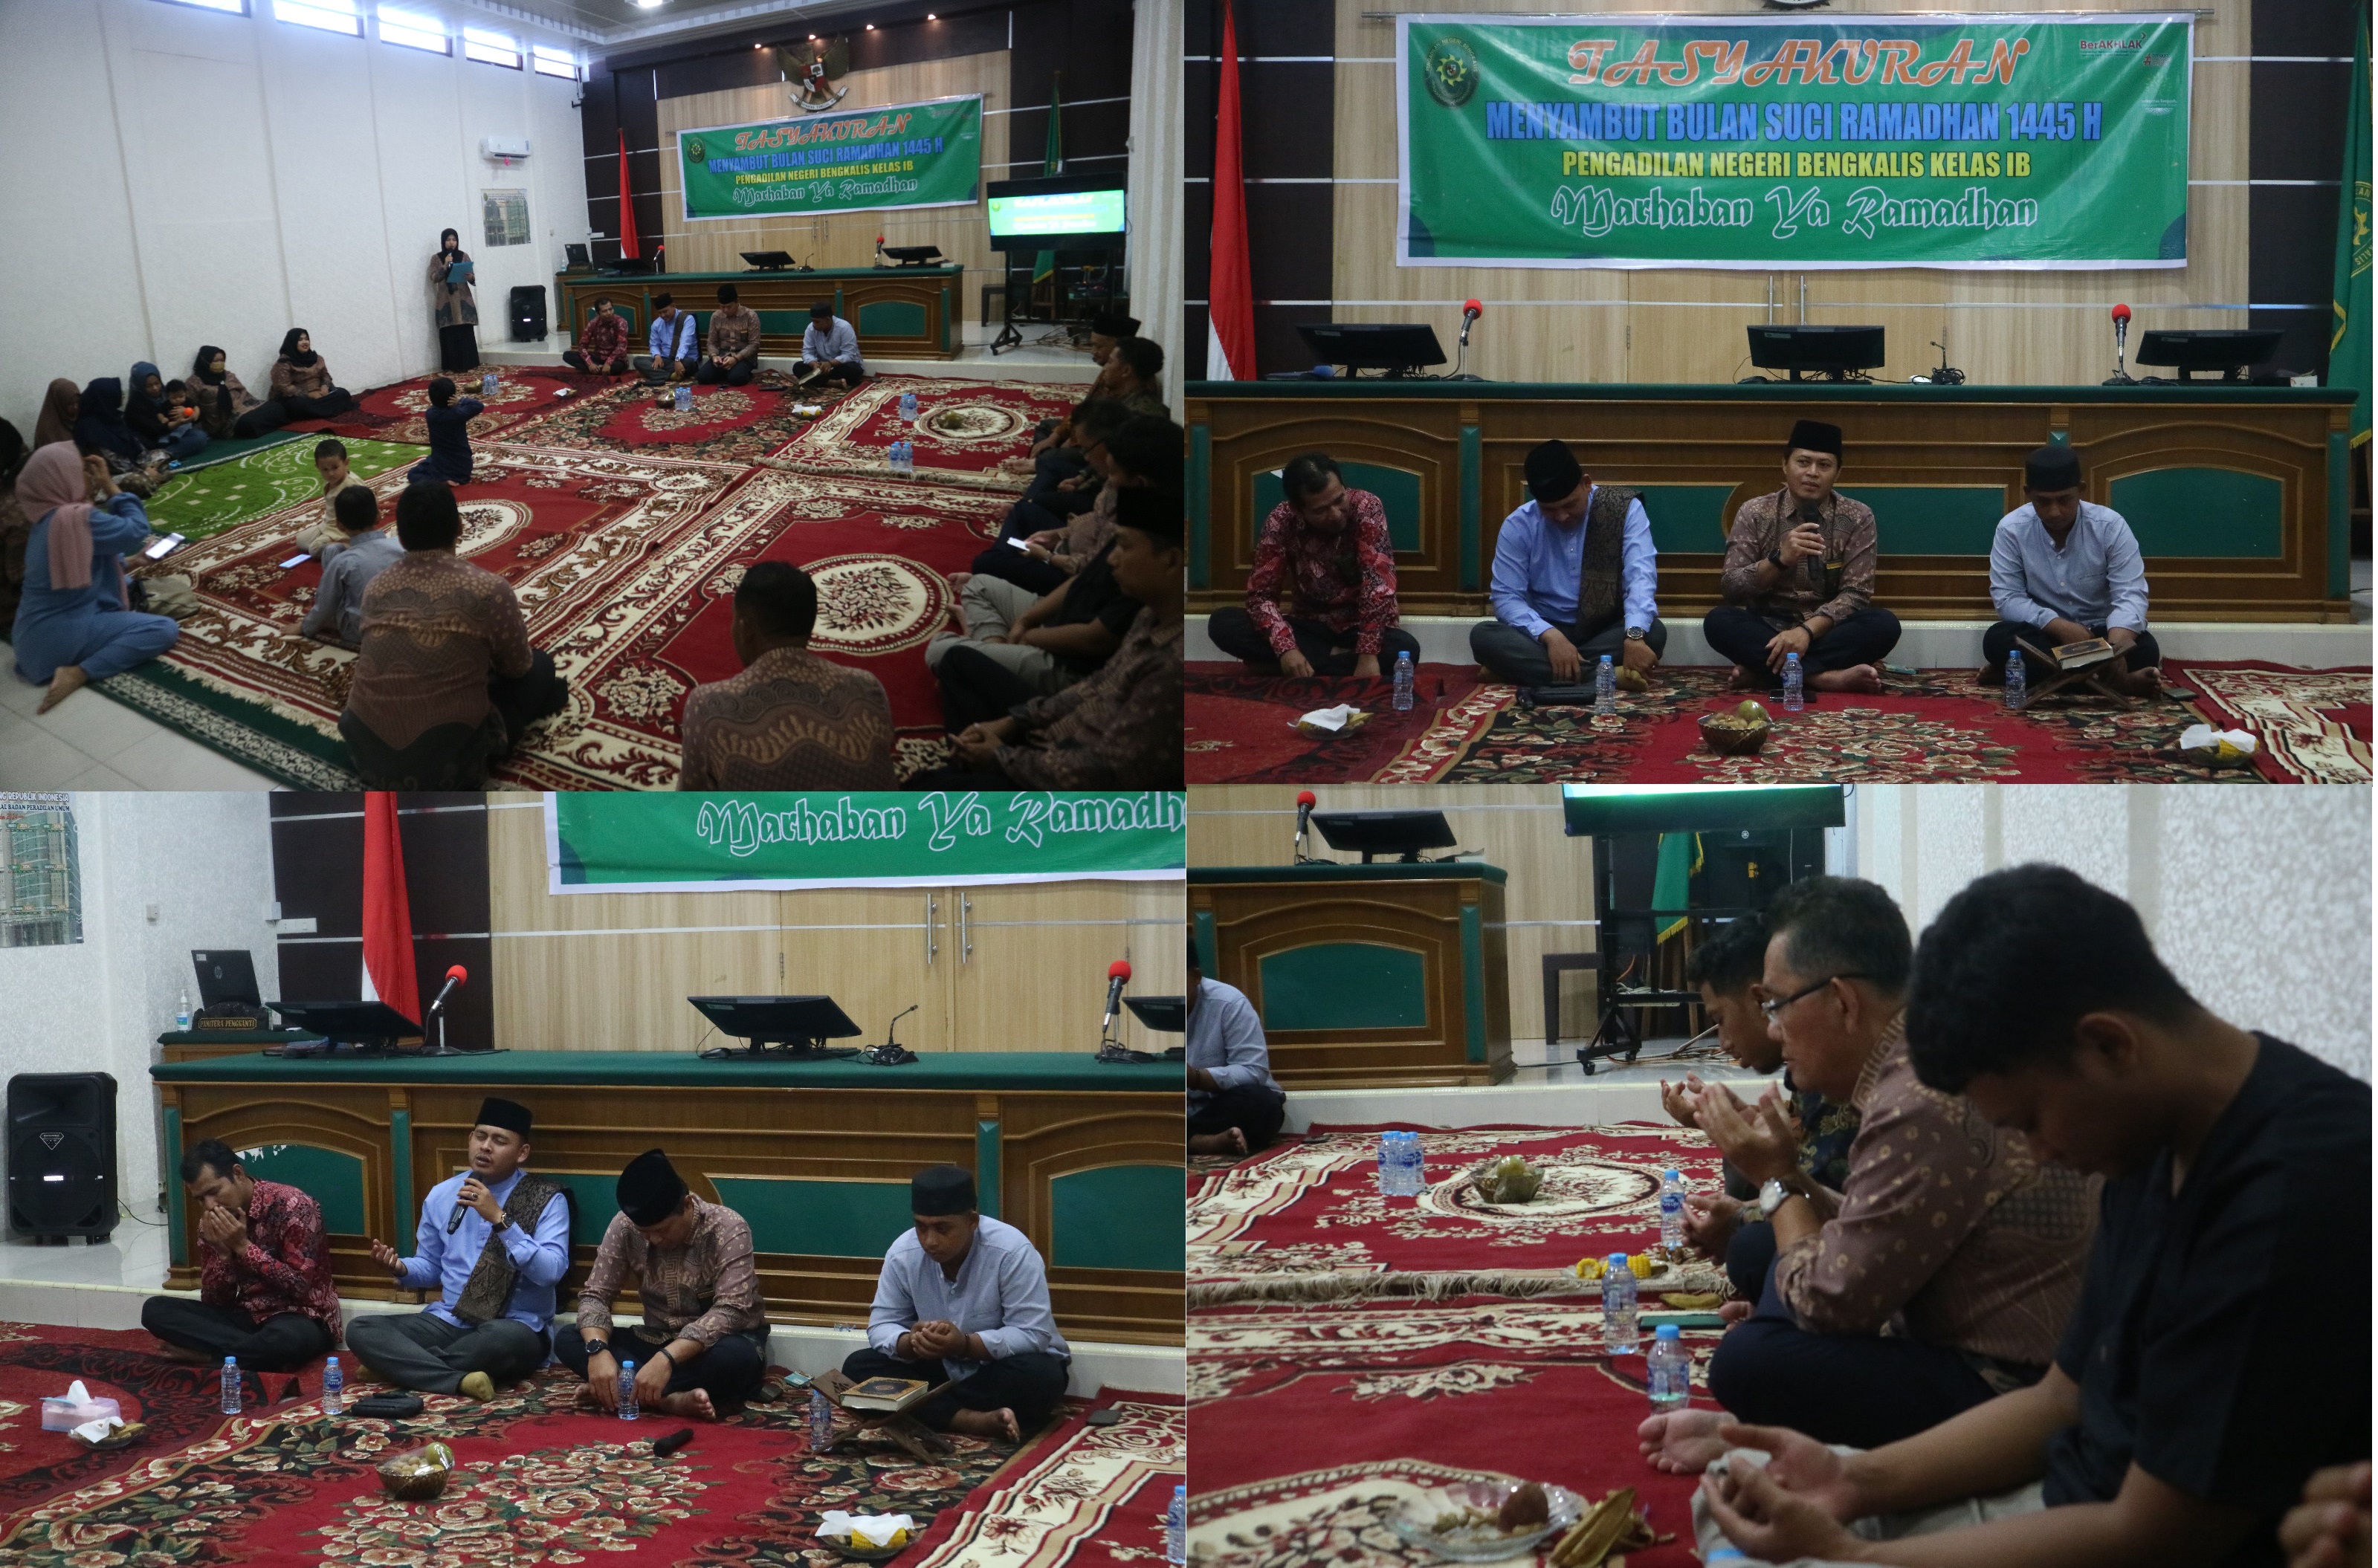 Acara Tasyakuran dalam Rangka Mennyambut Bulan Suci Ramadhan 1445H / 2024 M di PN Bengkalis